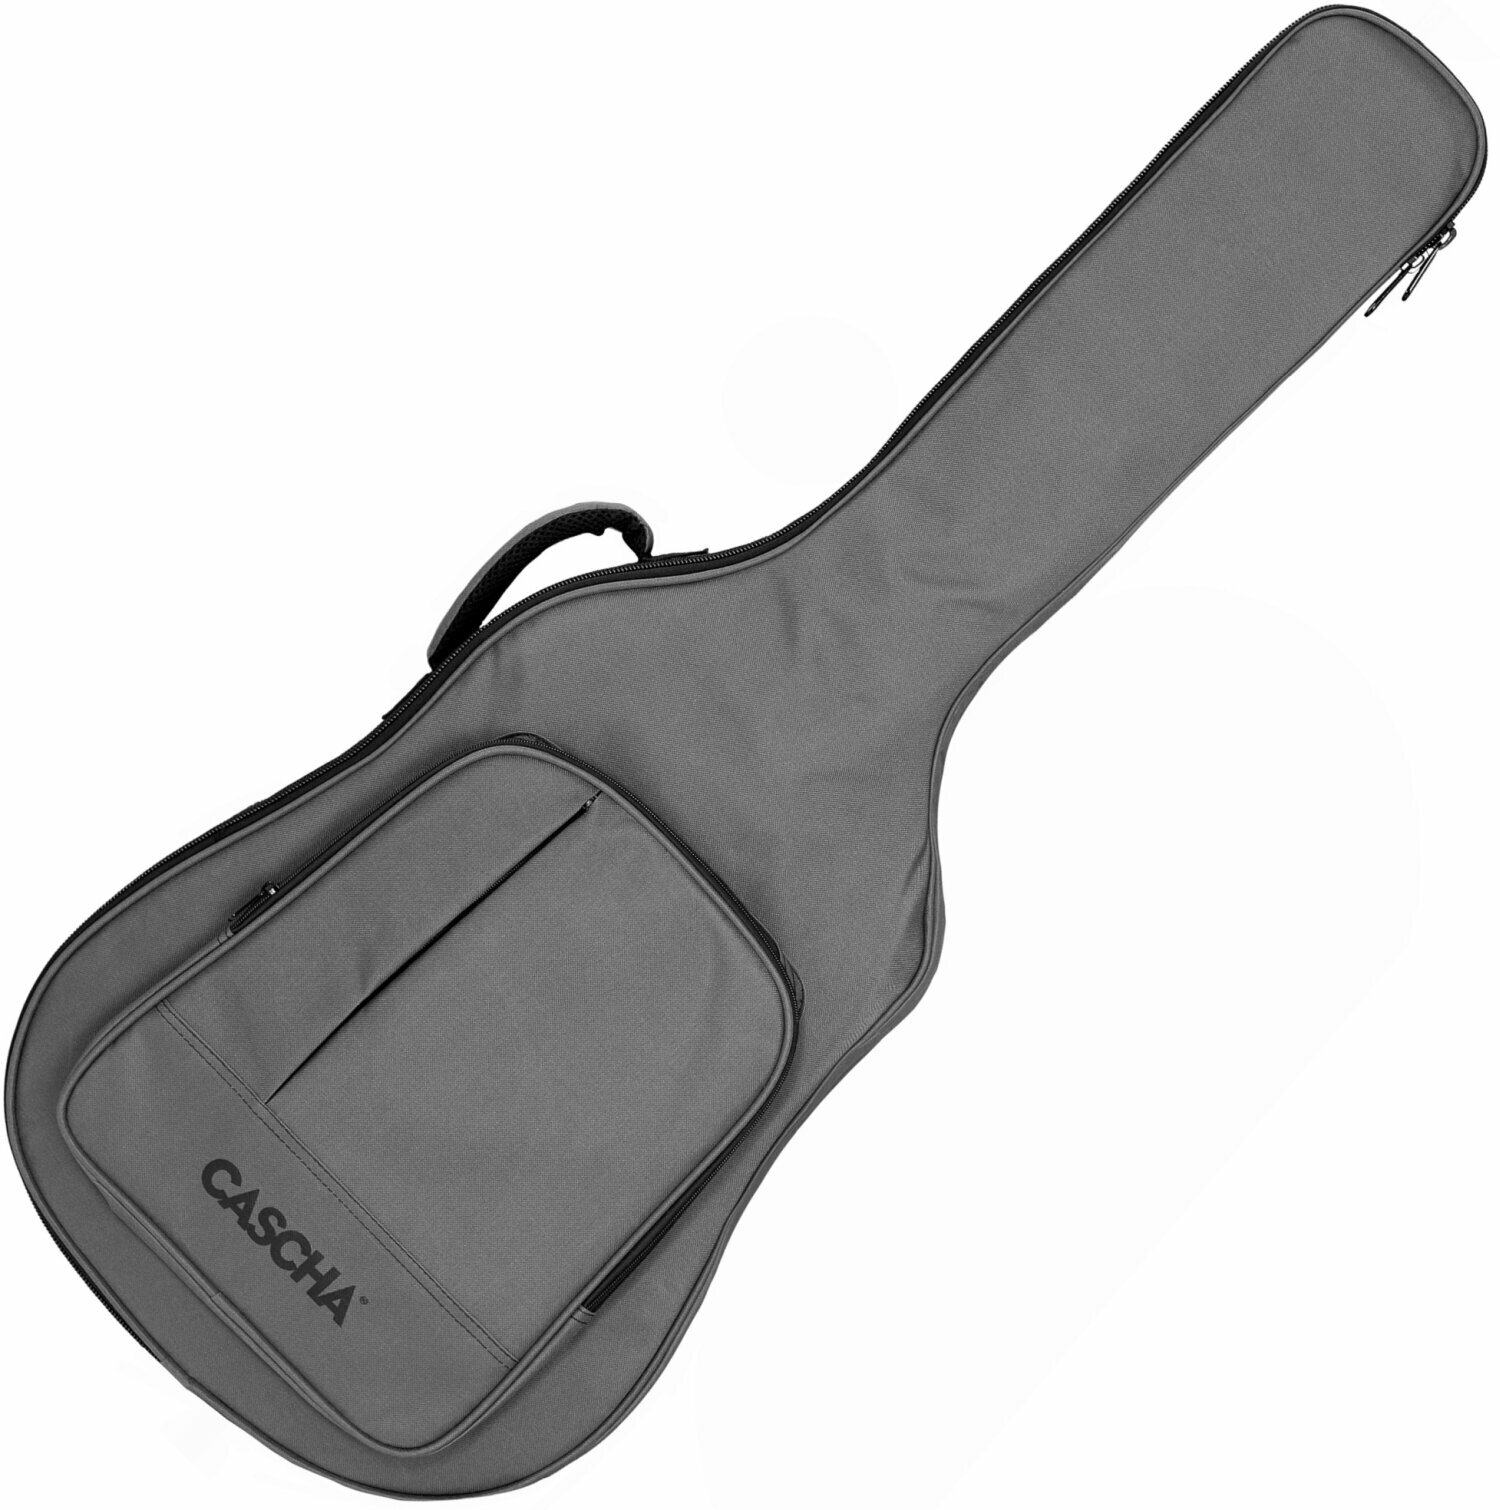 Tasche für akustische Gitarre, Gigbag für akustische Gitarre Cascha Acoustic Guitar Bag - Deluxe Tasche für akustische Gitarre, Gigbag für akustische Gitarre